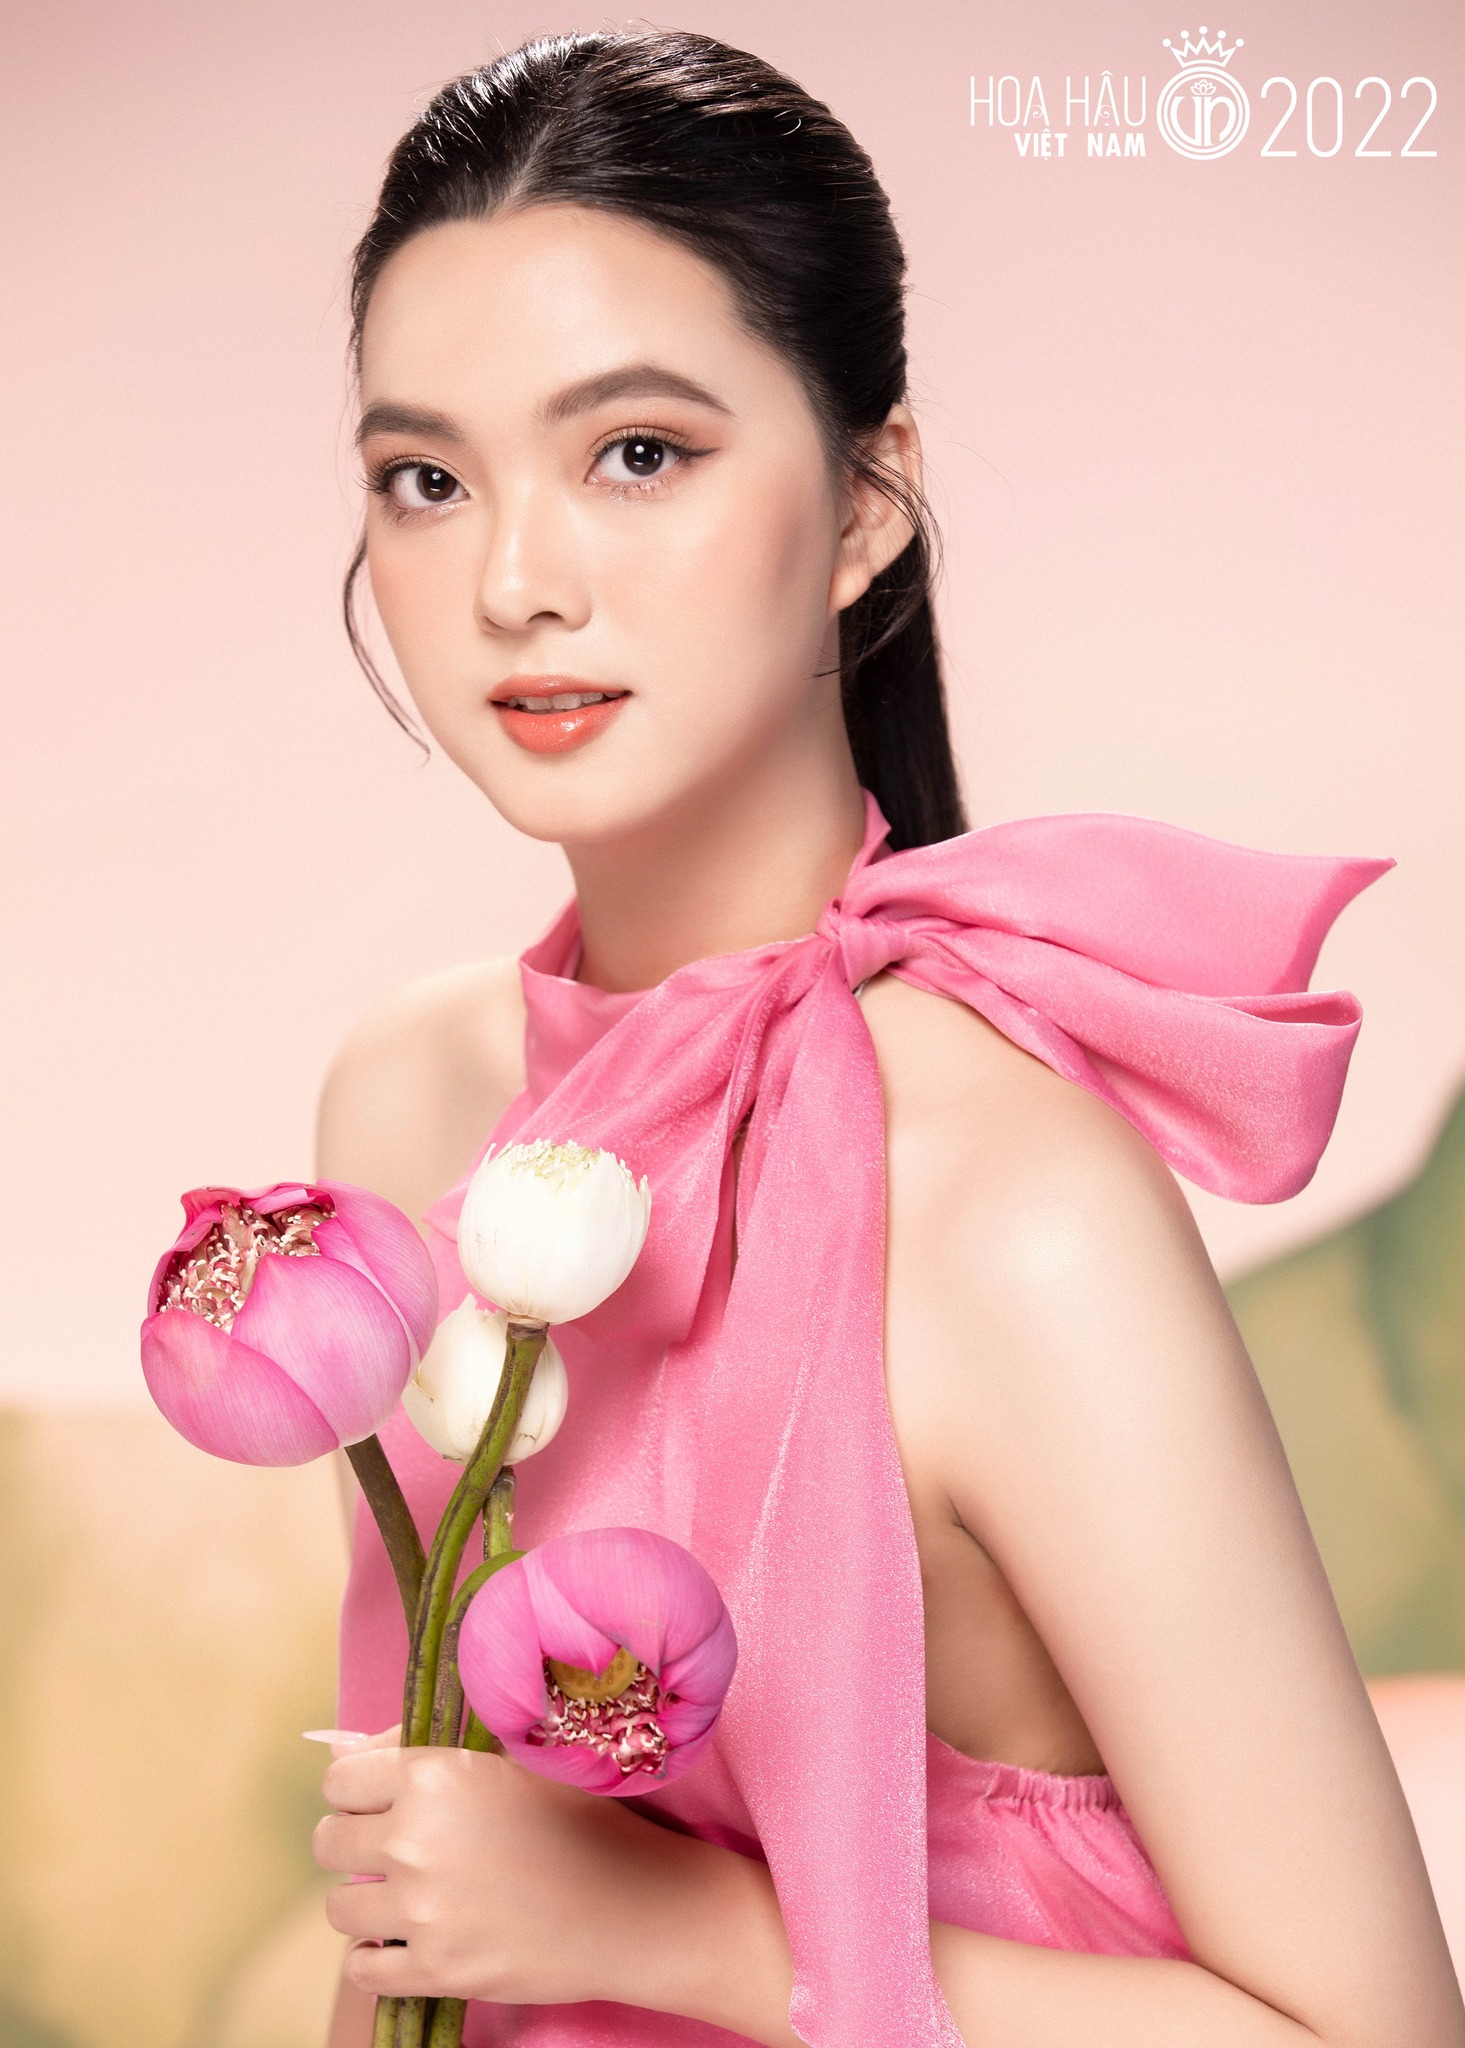 Ngất ngây với vẻ đẹp cô gái Quảng Nam tuổi đôi mươi là ứng viên hot cho Hoa hậu Việt Nam - 1